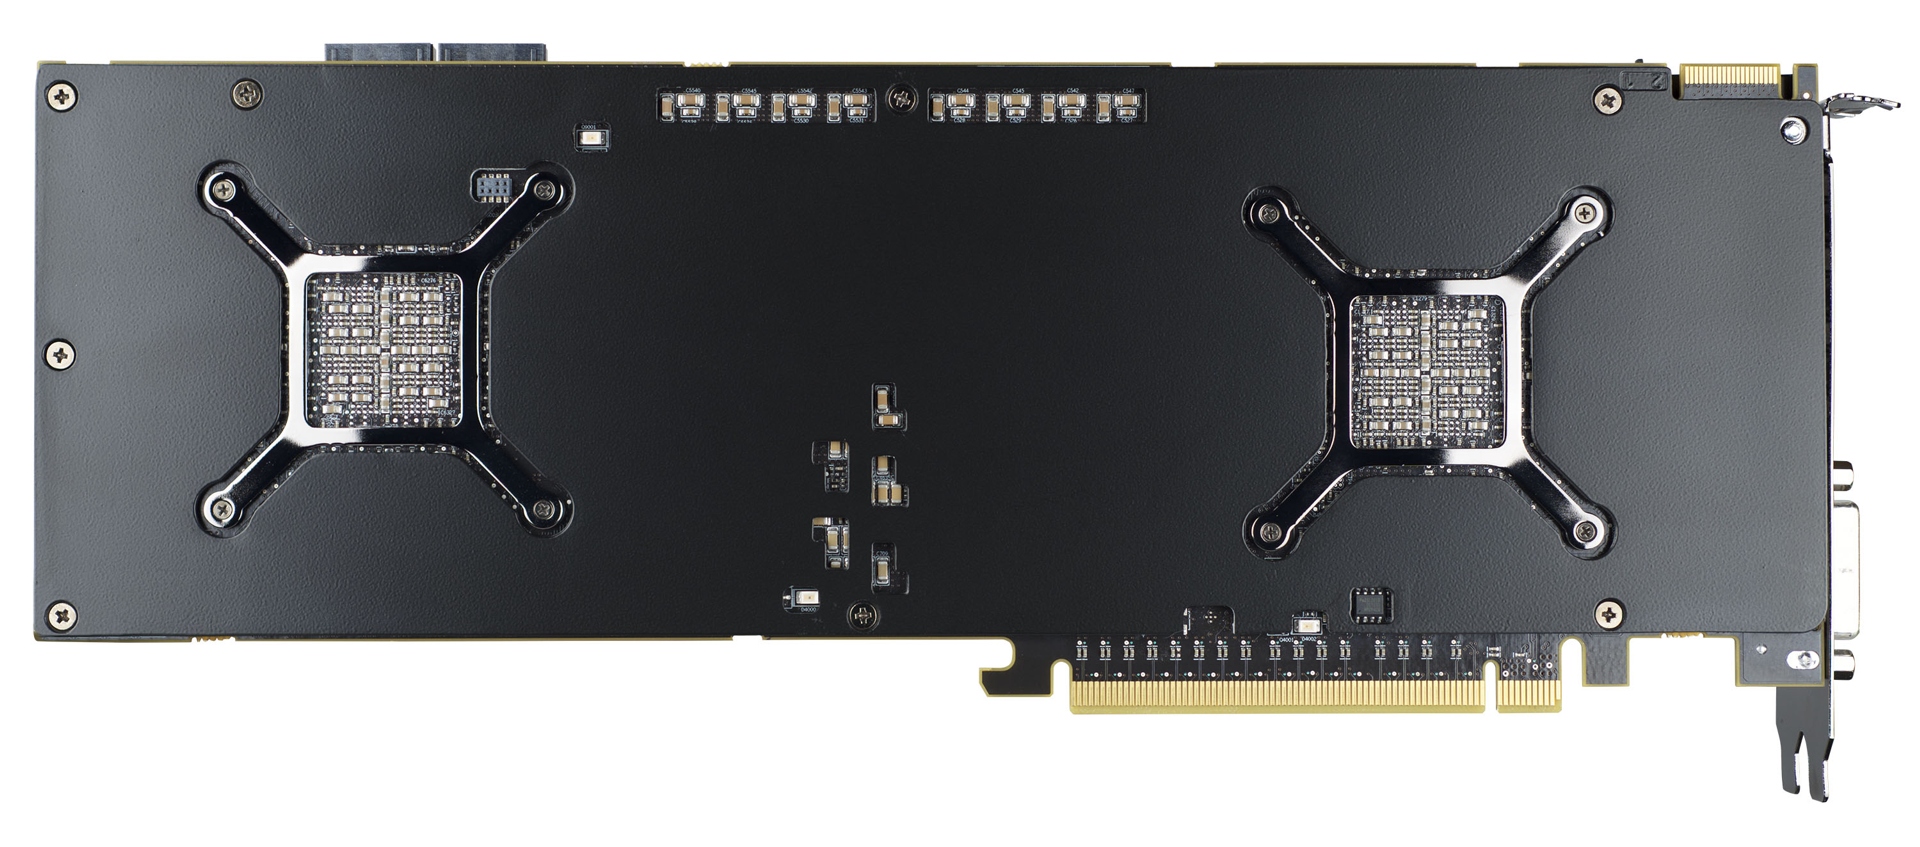 Immagine pubblicata in relazione al seguente contenuto: Sapphire annuncia la sua video card dual-gpu Radeon HD 7990 | Nome immagine: news19406_Sapphire-Radeon-HD-7990_3.jpg